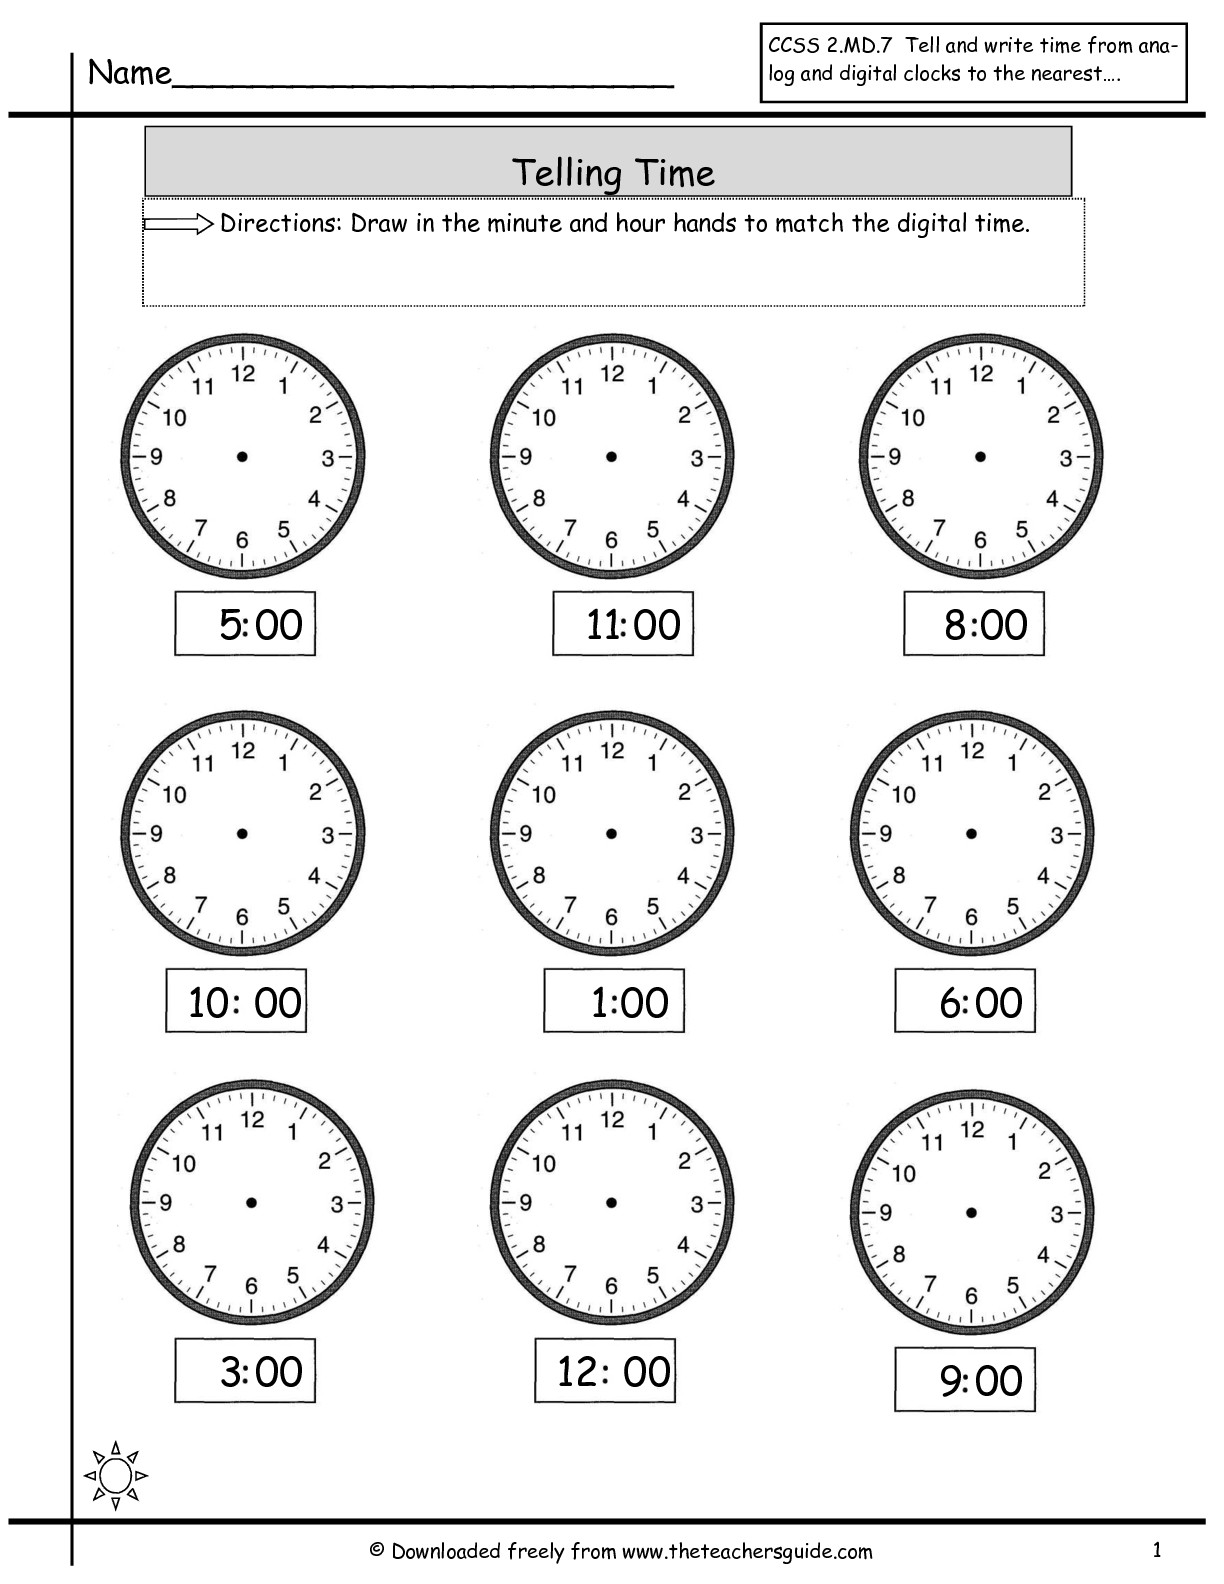 clock-time-worksheets-free-printable-for-kids-zac-sheet-gambaran